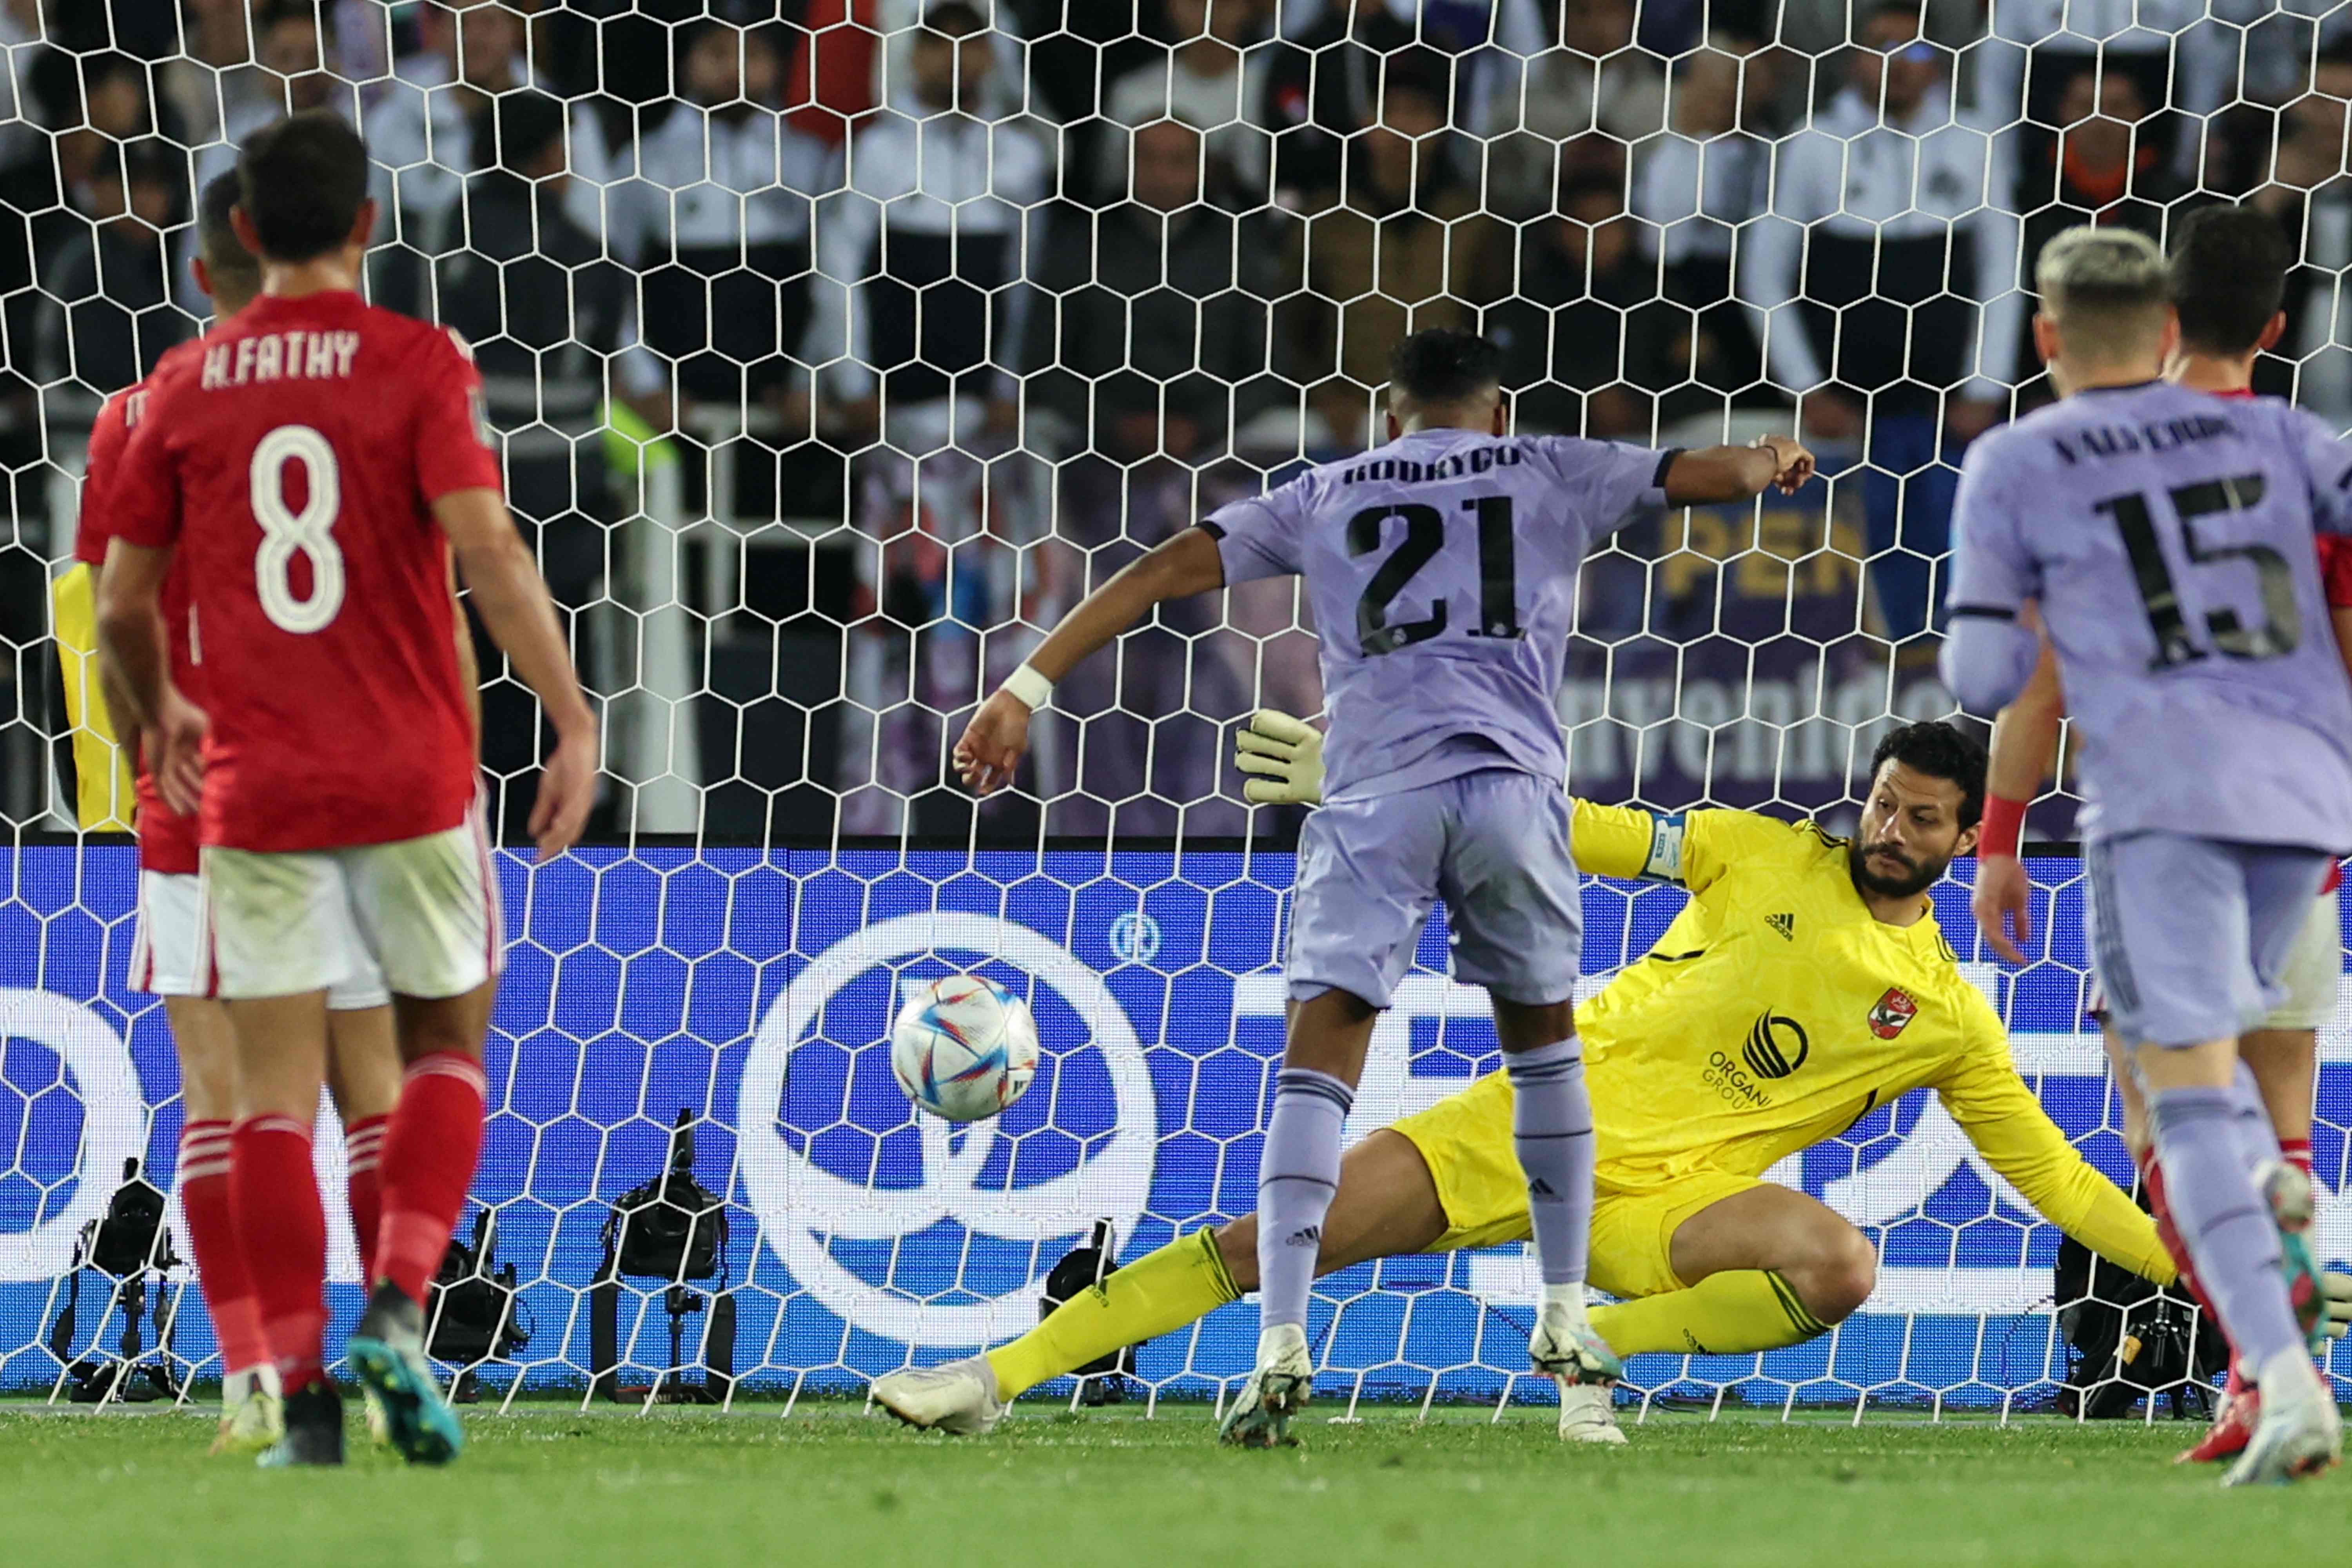  Rodrygo anota el tercer gol del Real Madrid. (Foto Prensa Libre: AFP)